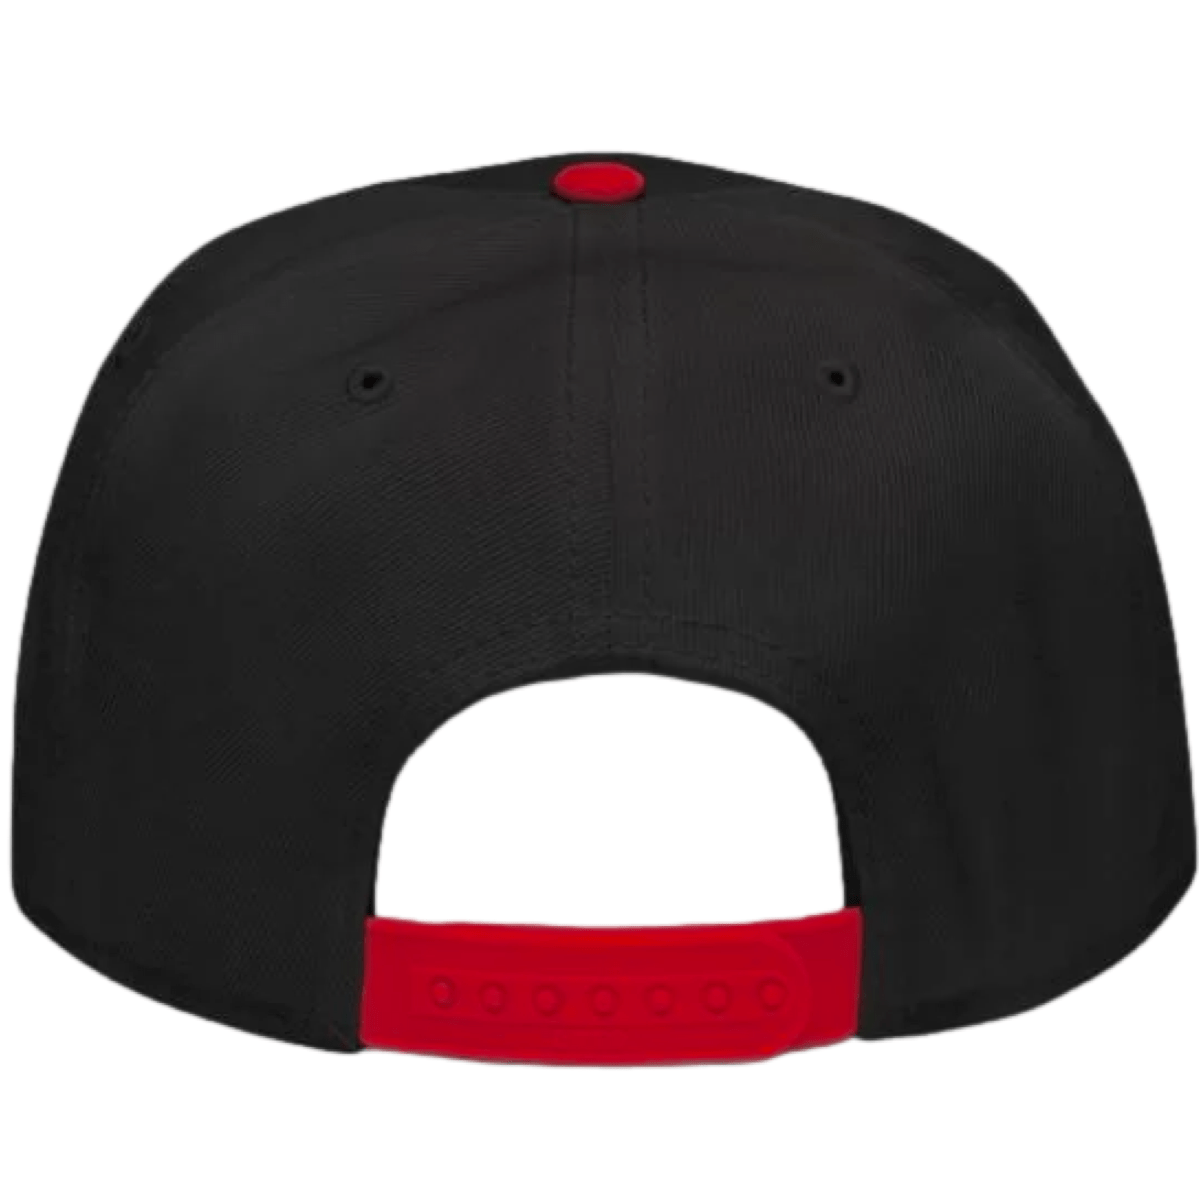 Bred 4s Snapback Hat - Jordan 4 Bred Reimagined Hats - Money Talks